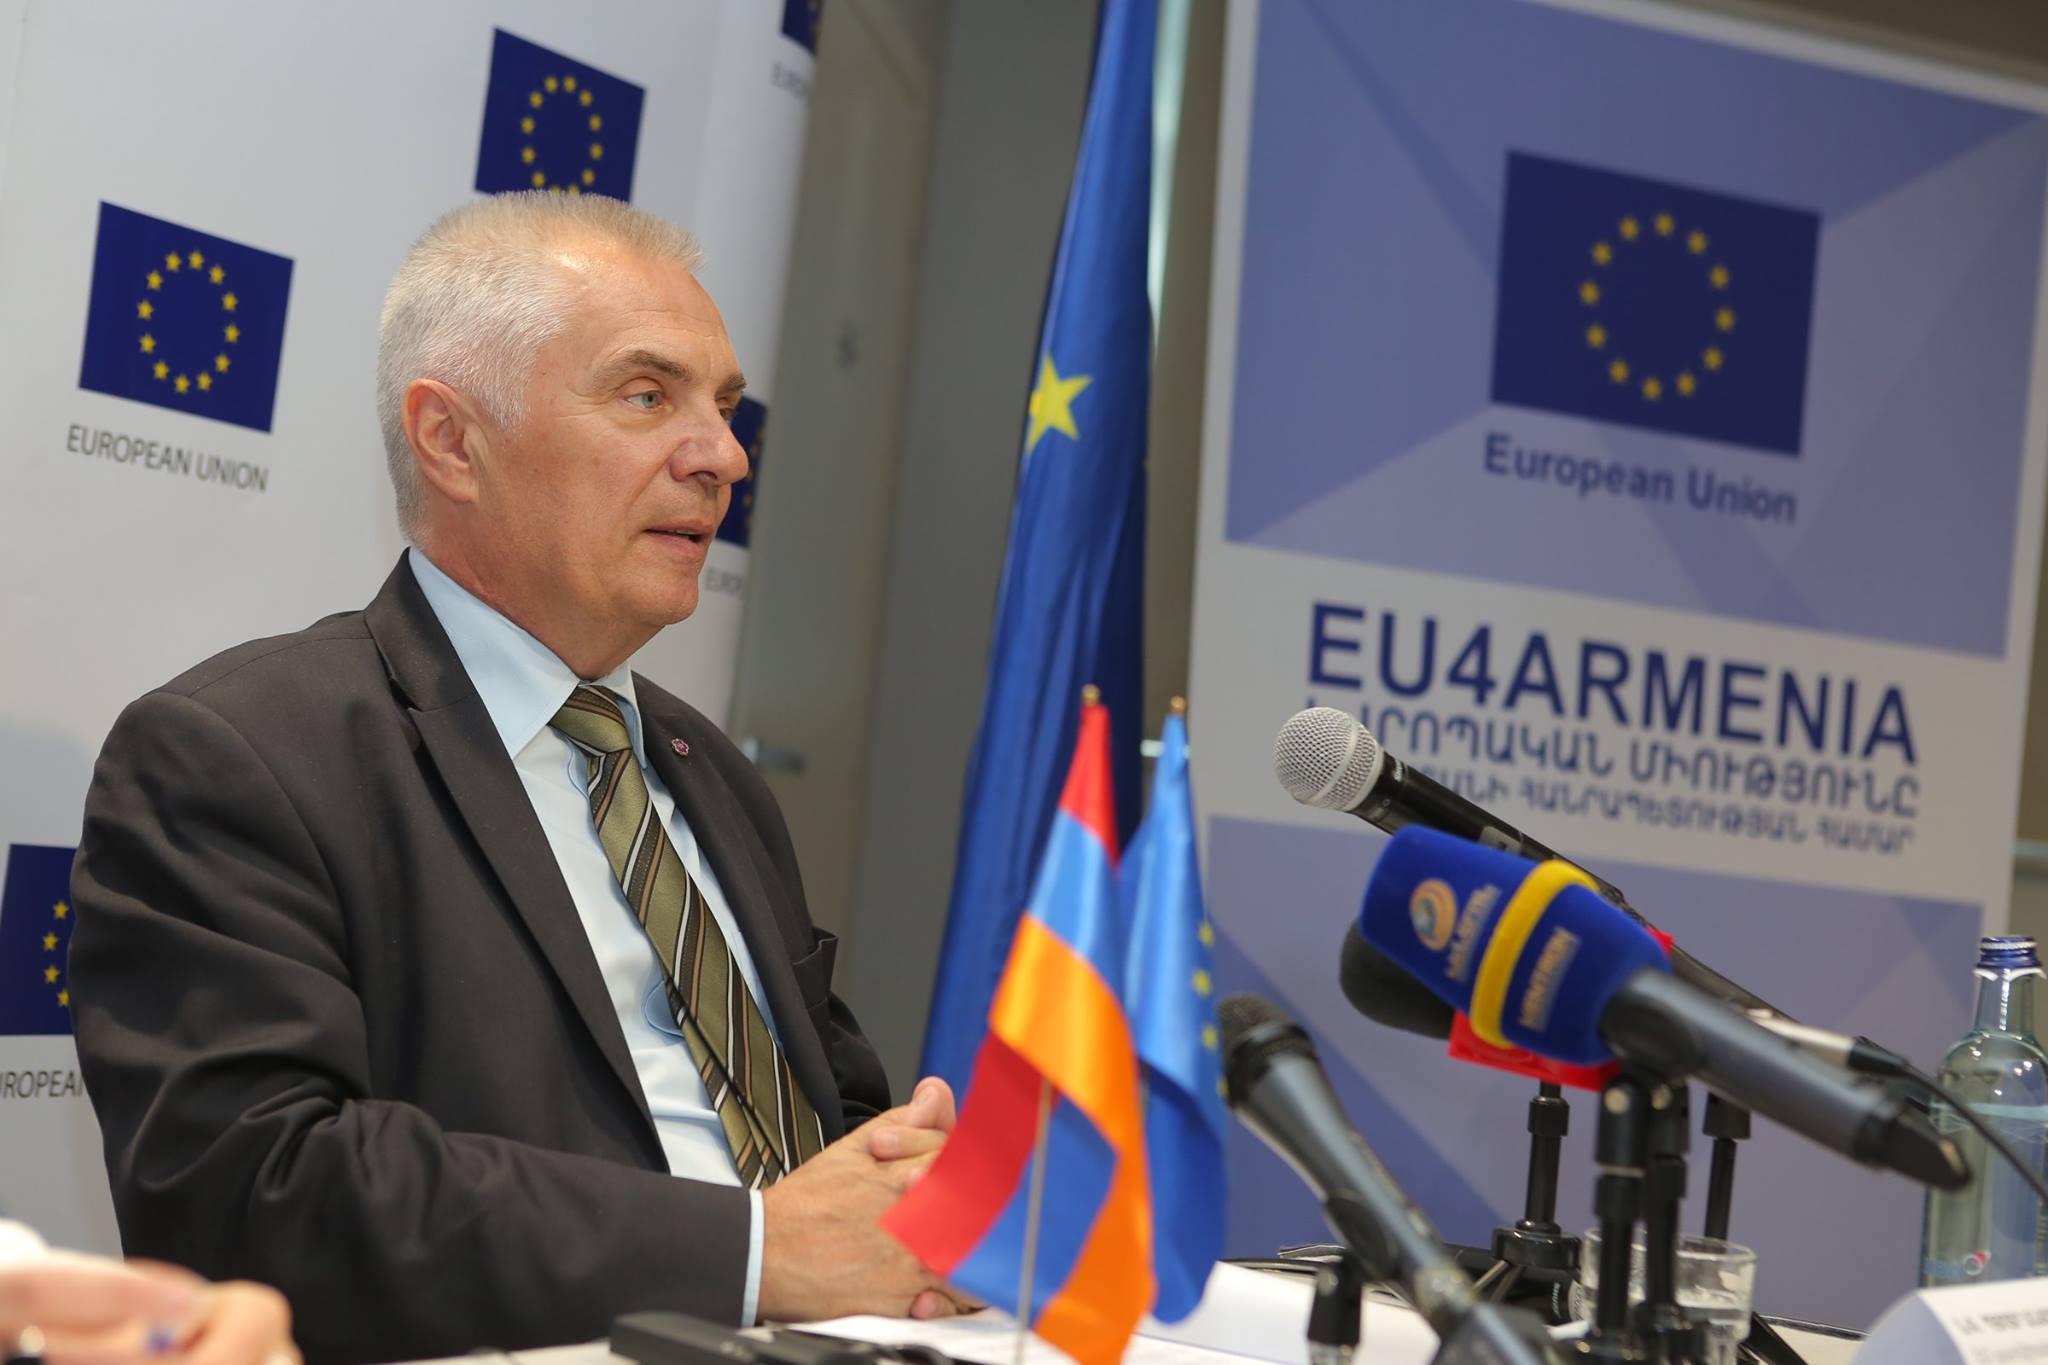 Невзирая на закрытие офиса: ЕС надеется на продолжение программ ОБСЕ в Армении – посол